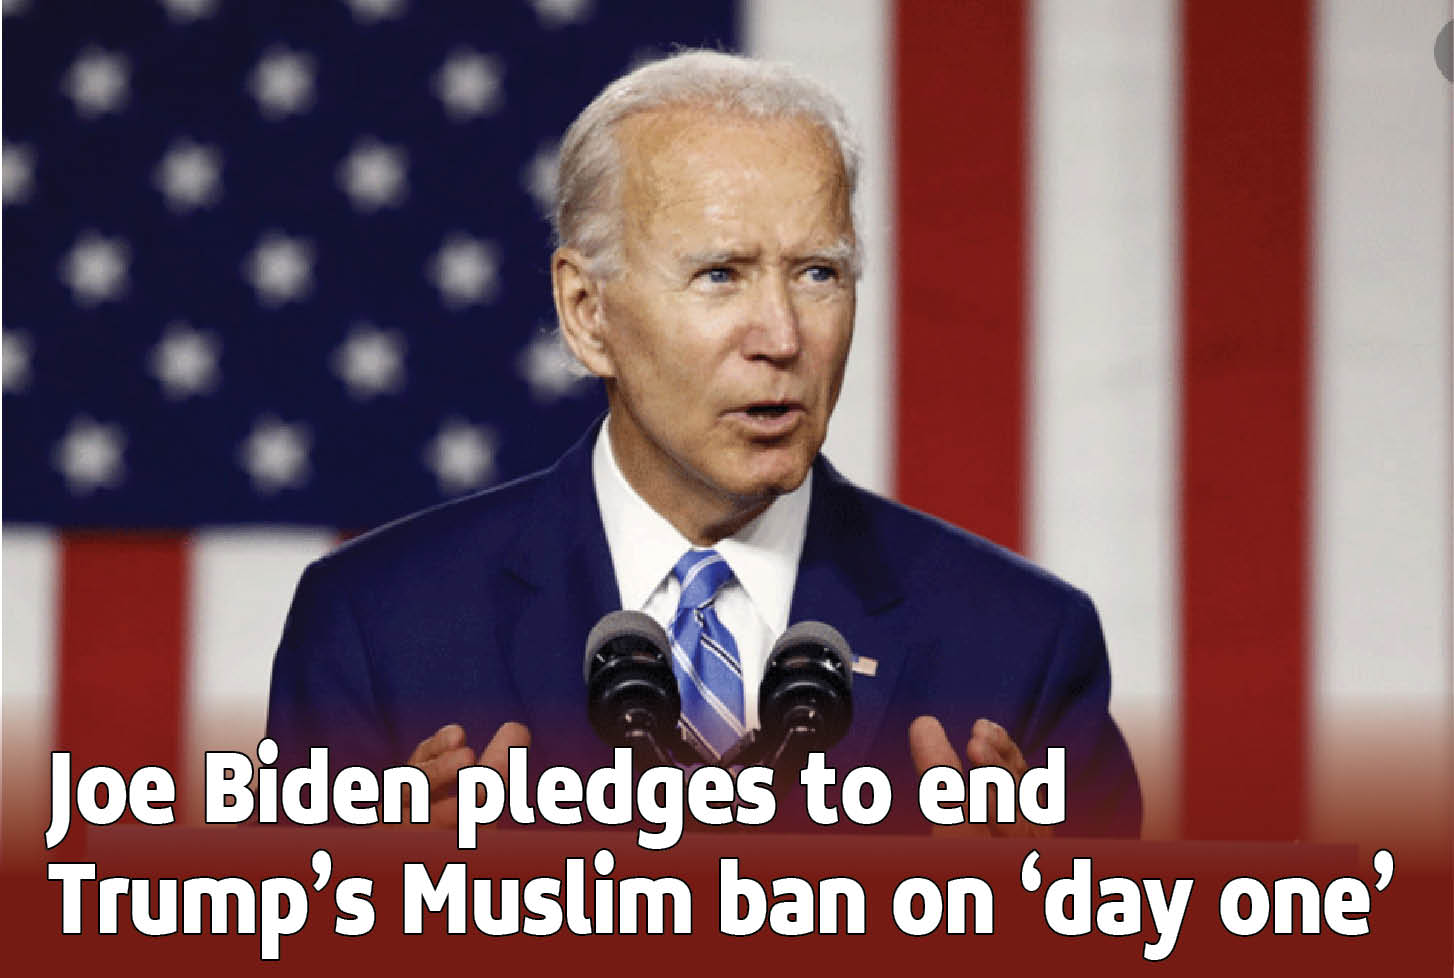 Joe-Biden-pledges-to-end-Trump%E2%80%99s-Muslim-ban-on-%E2%80%98day-one%E2%80%99.jpg